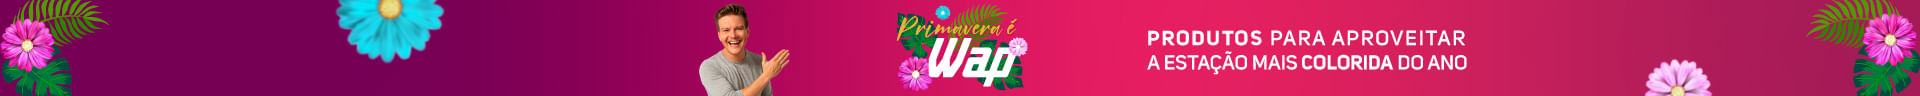 Top banner Primavera e WAP